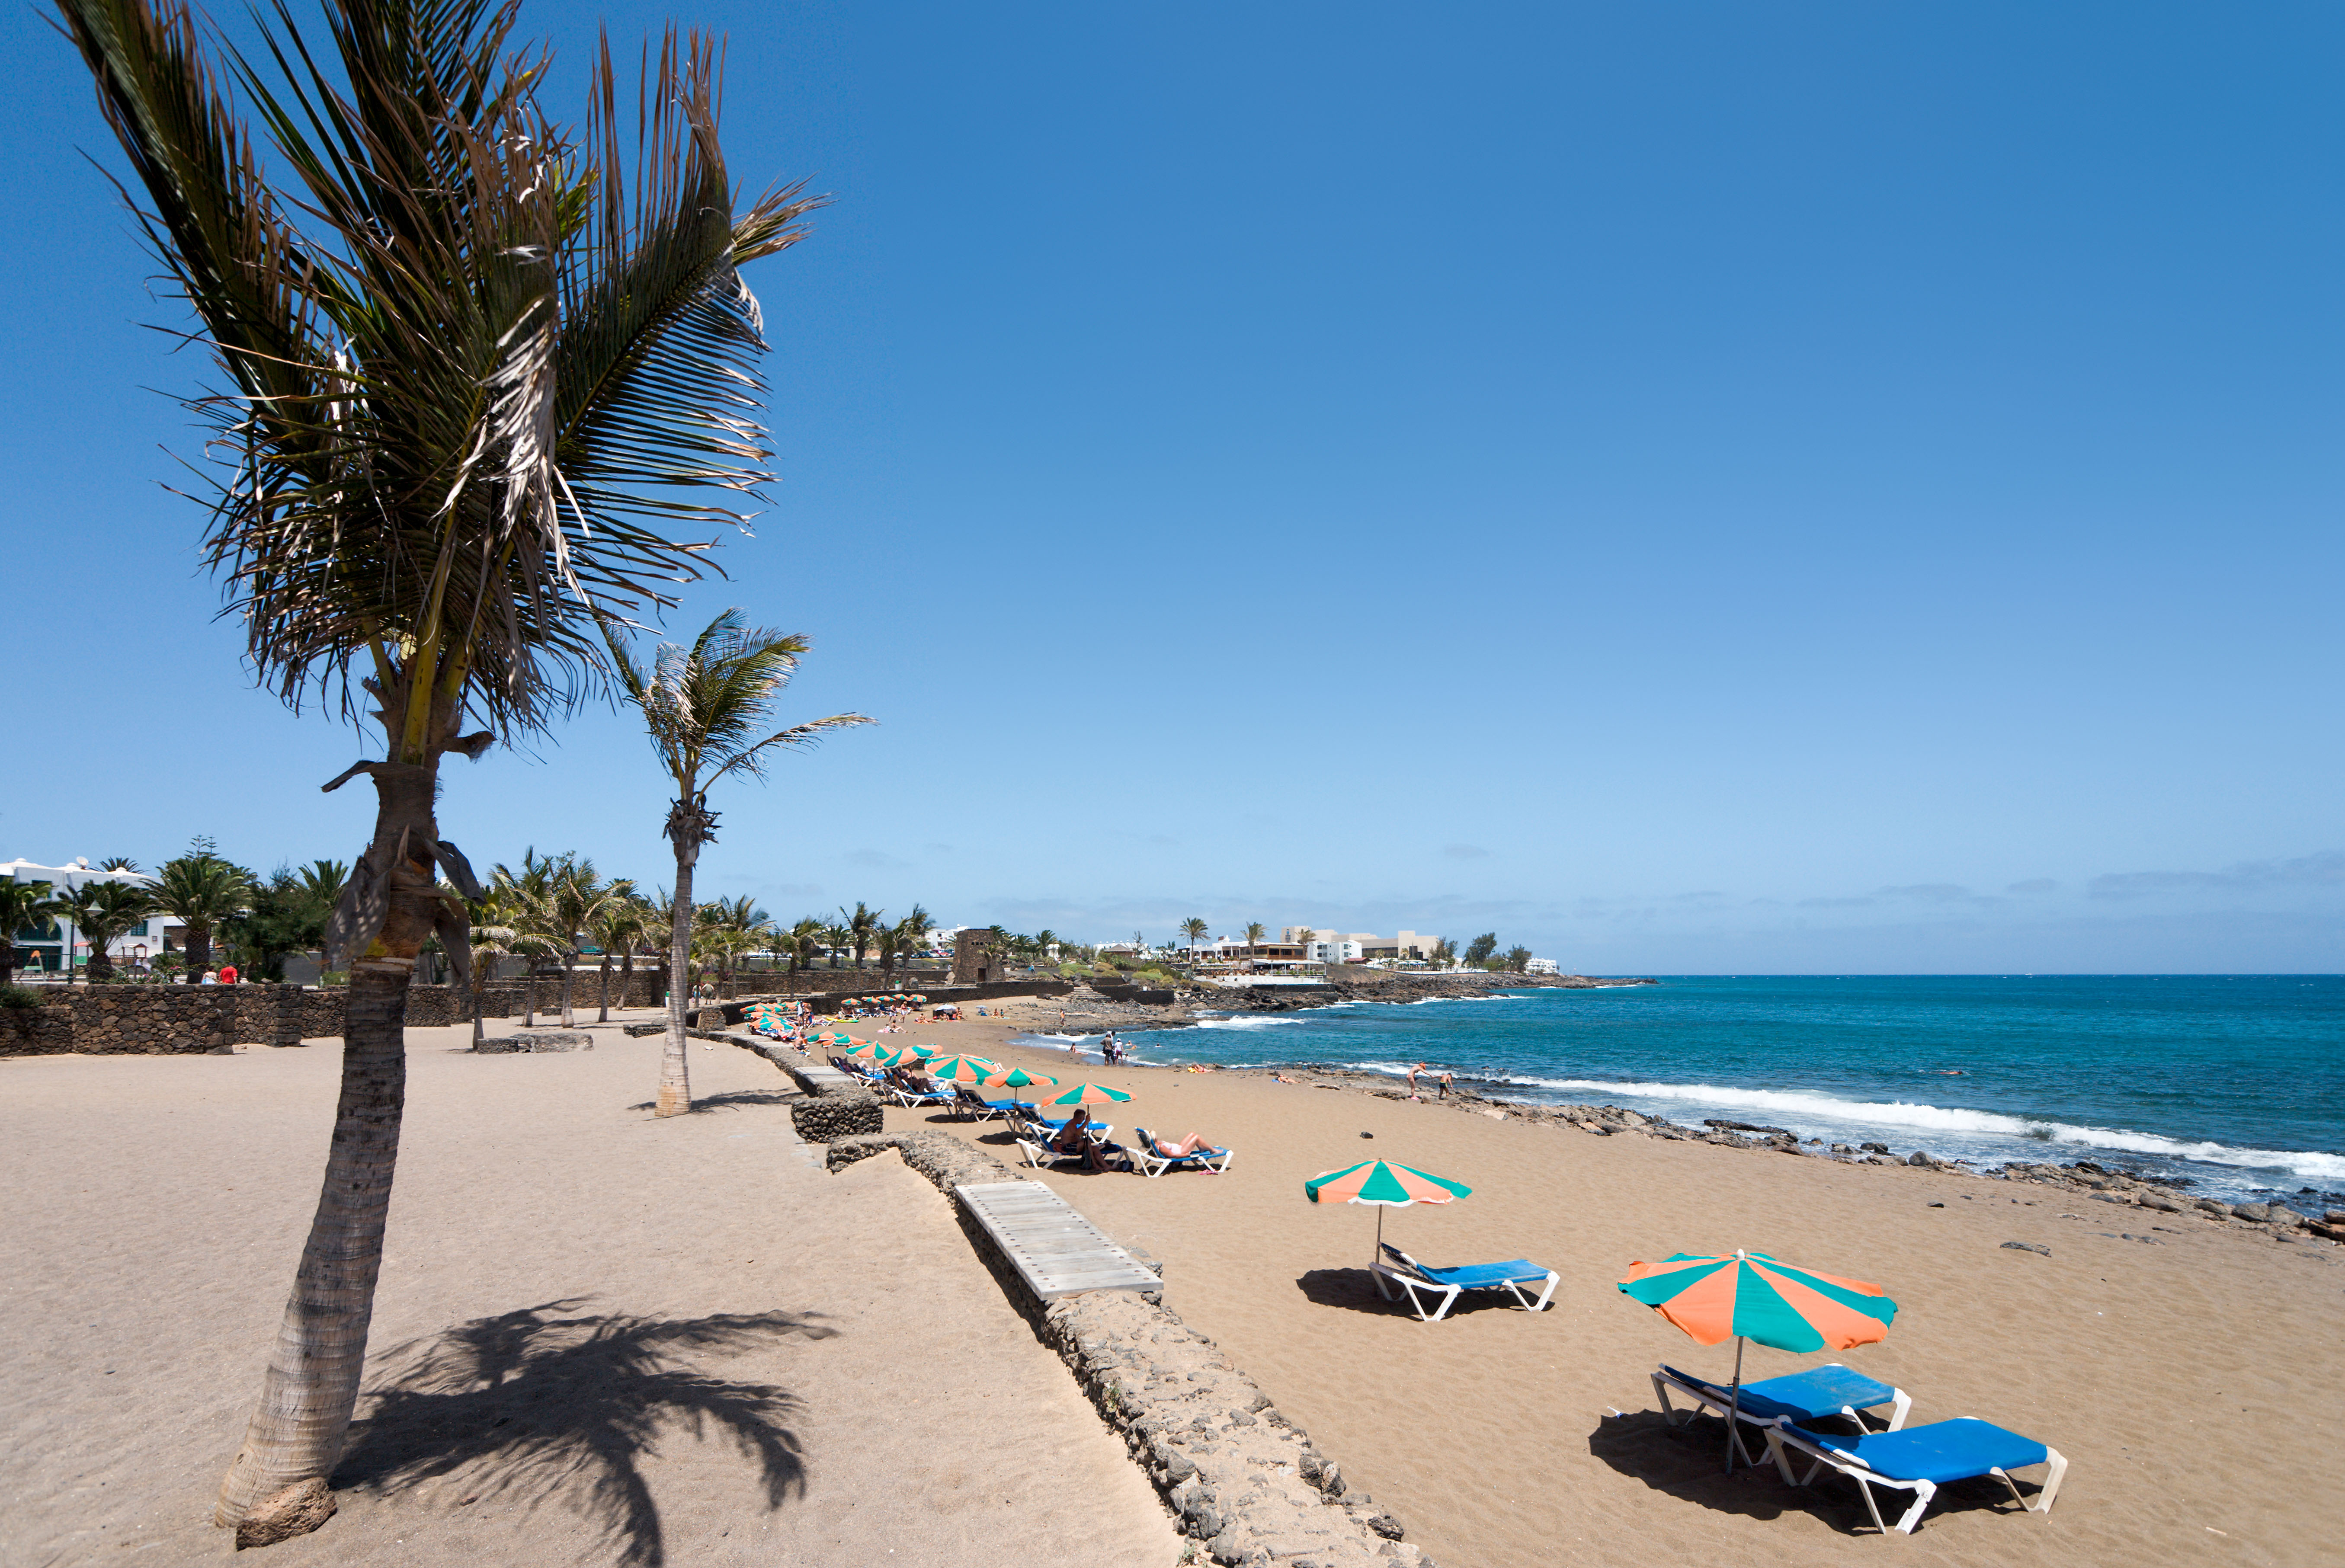 Der Strand von Playa Bastian, Costa Teguise, Lanzarote